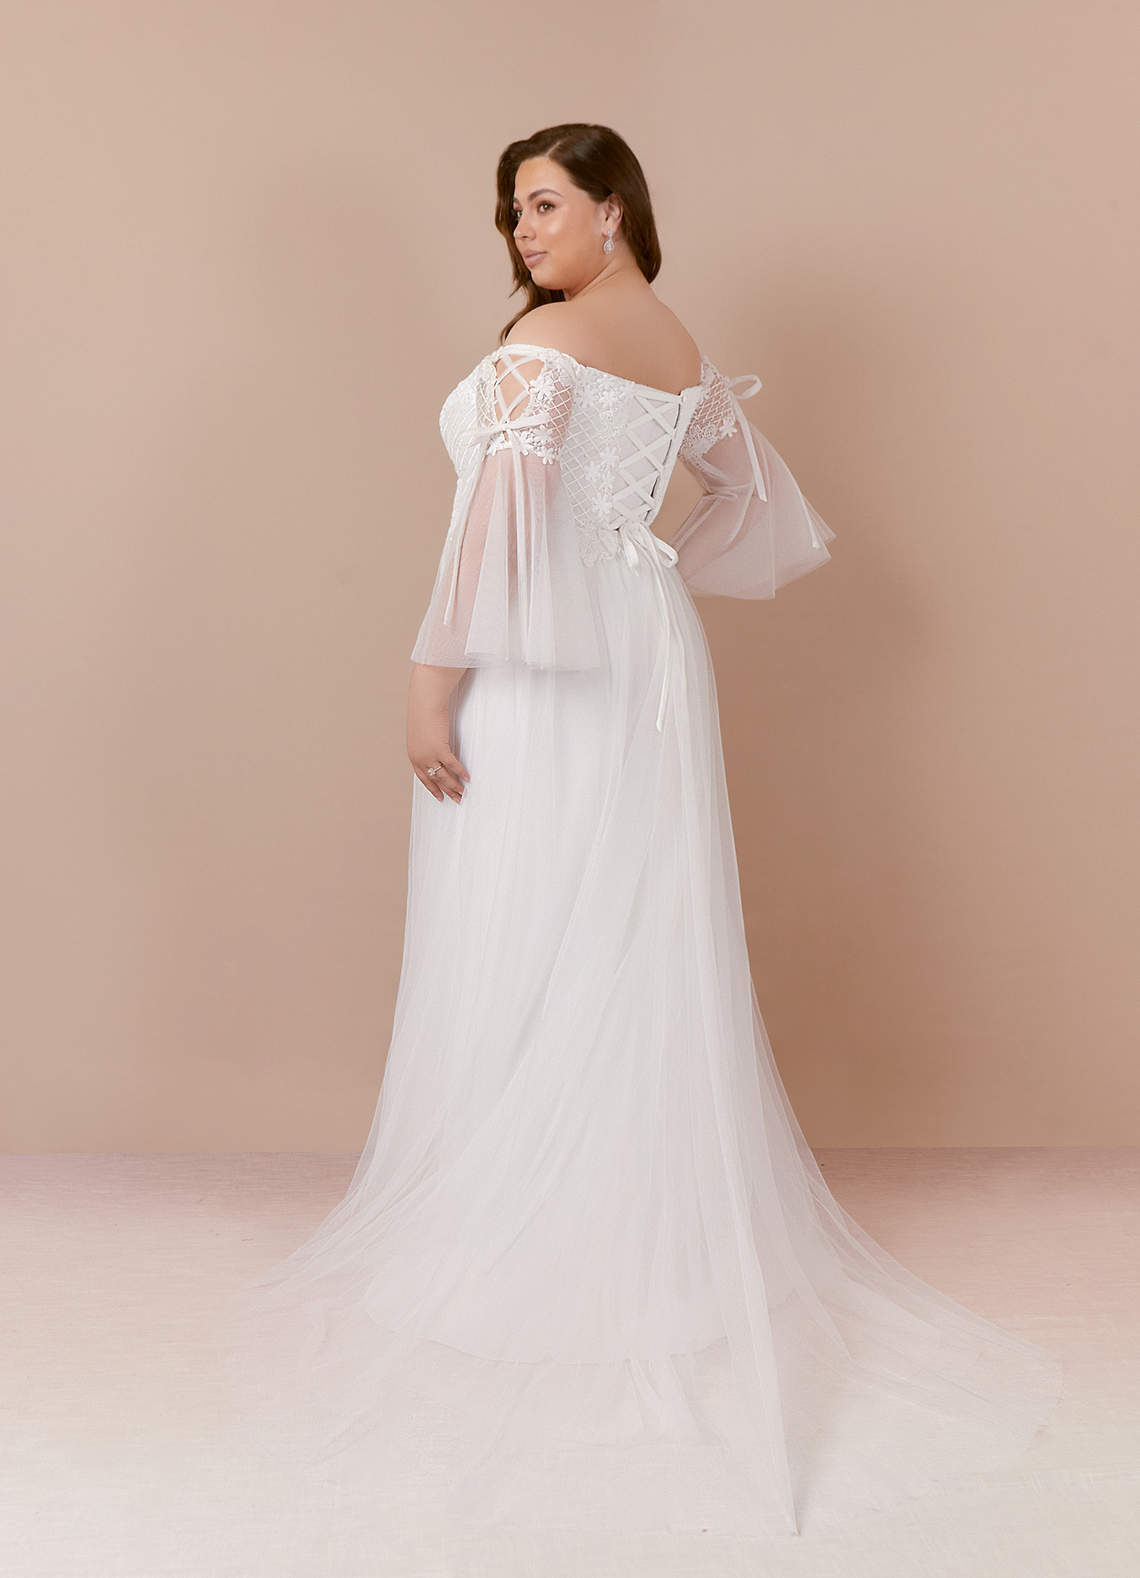 Azazie Stevie Wedding Dresses A-Line Lace Tulle Chapel Train Dress image1